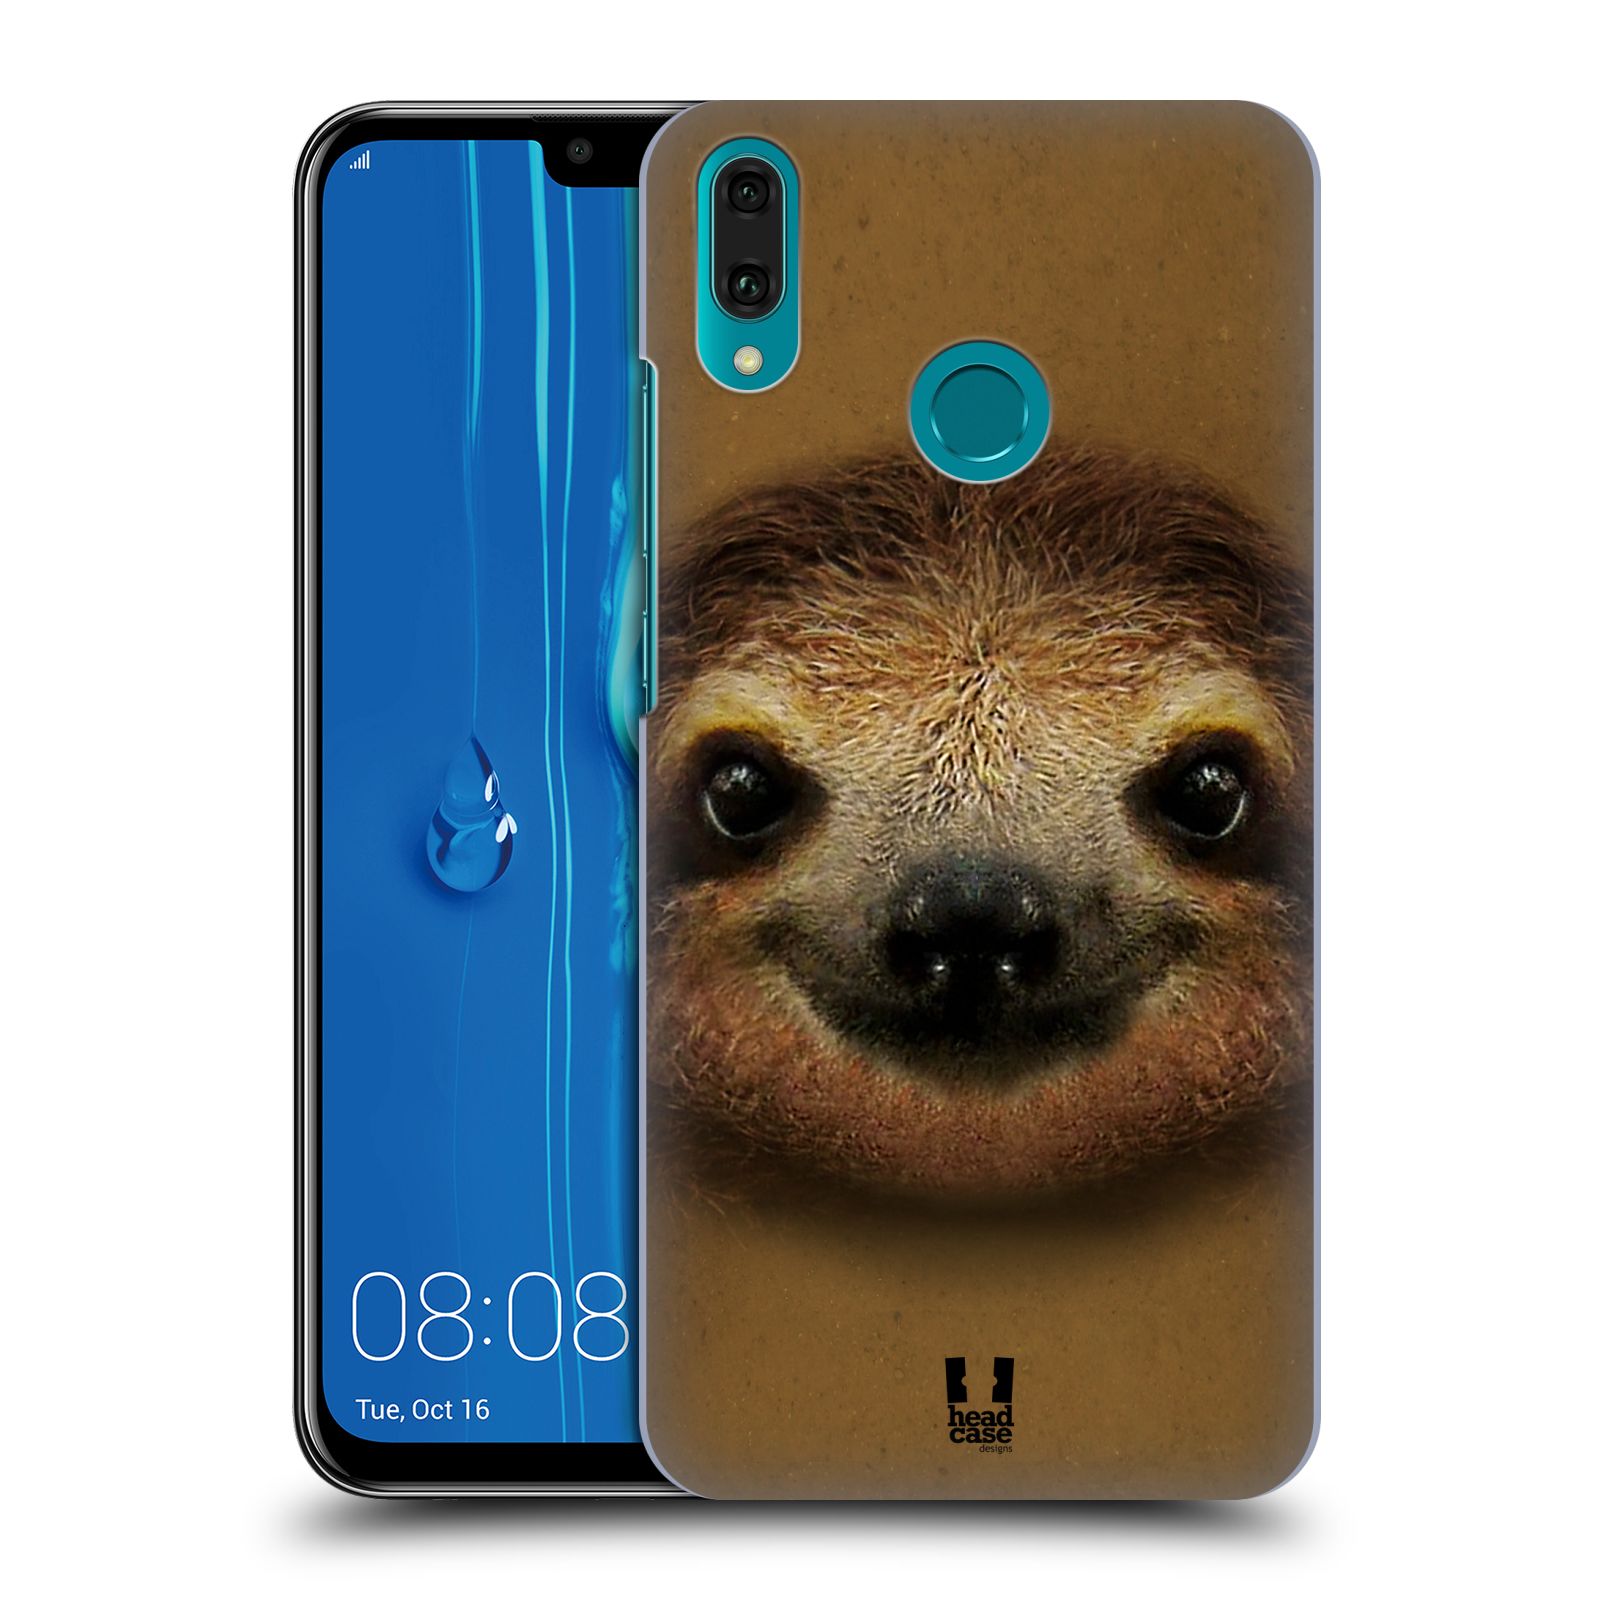 Pouzdro na mobil Huawei Y9 2019 - HEAD CASE - vzor Zvířecí tváře 2 lenochod